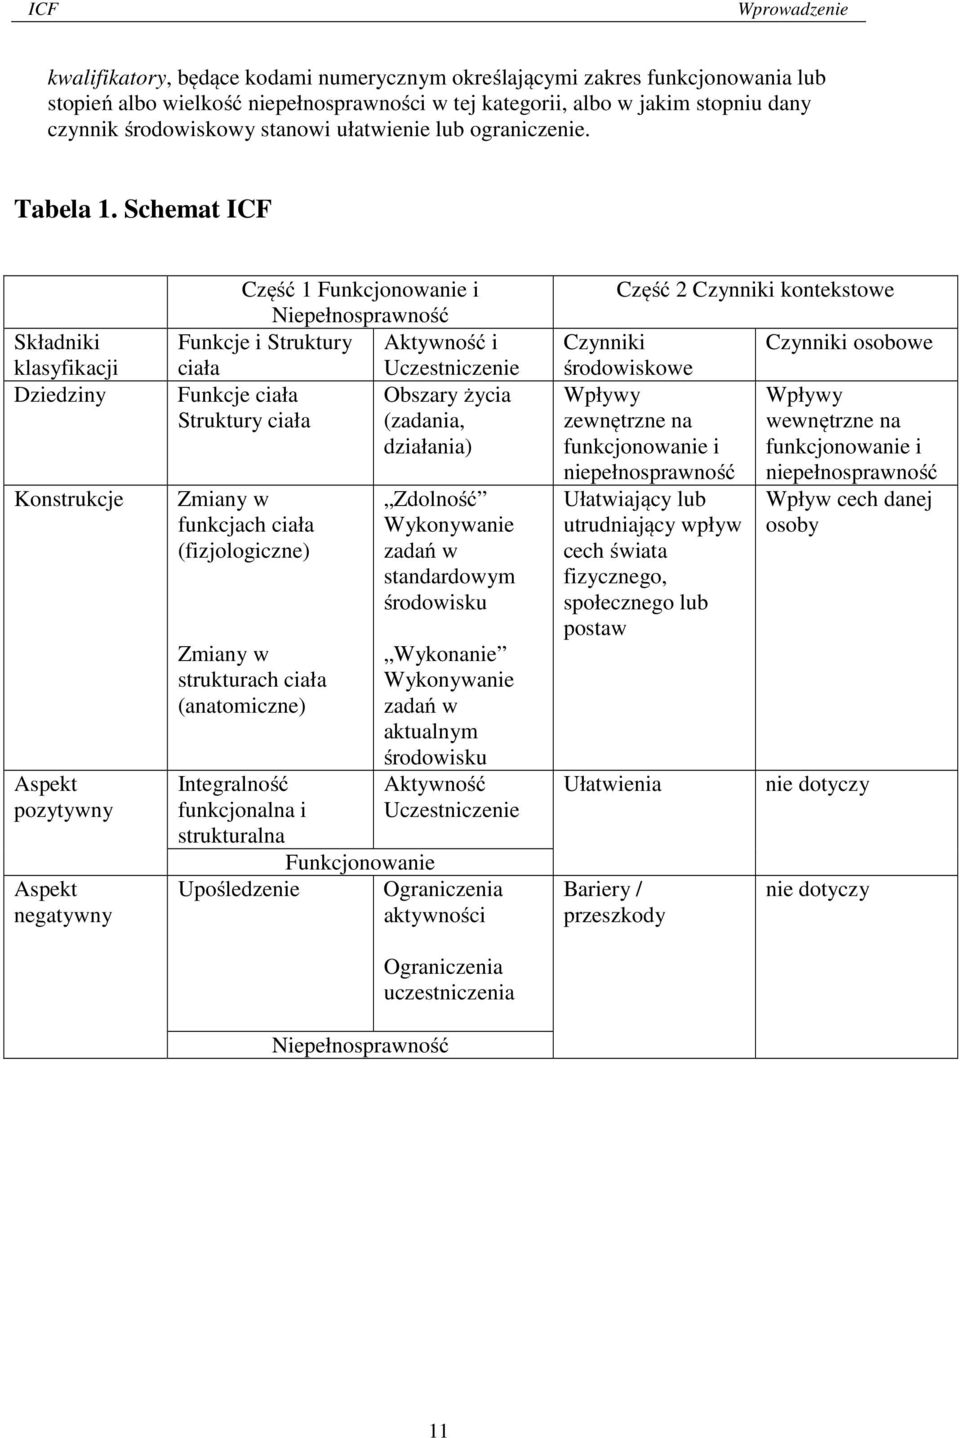 Schemat ICF Składniki klasyfikacji Dziedziny Konstrukcje Aspekt pozytywny Aspekt negatywny Część 1 Funkcjonowanie i Niepełnosprawność Funkcje i Struktury Aktywność i ciała Uczestniczenie Funkcje